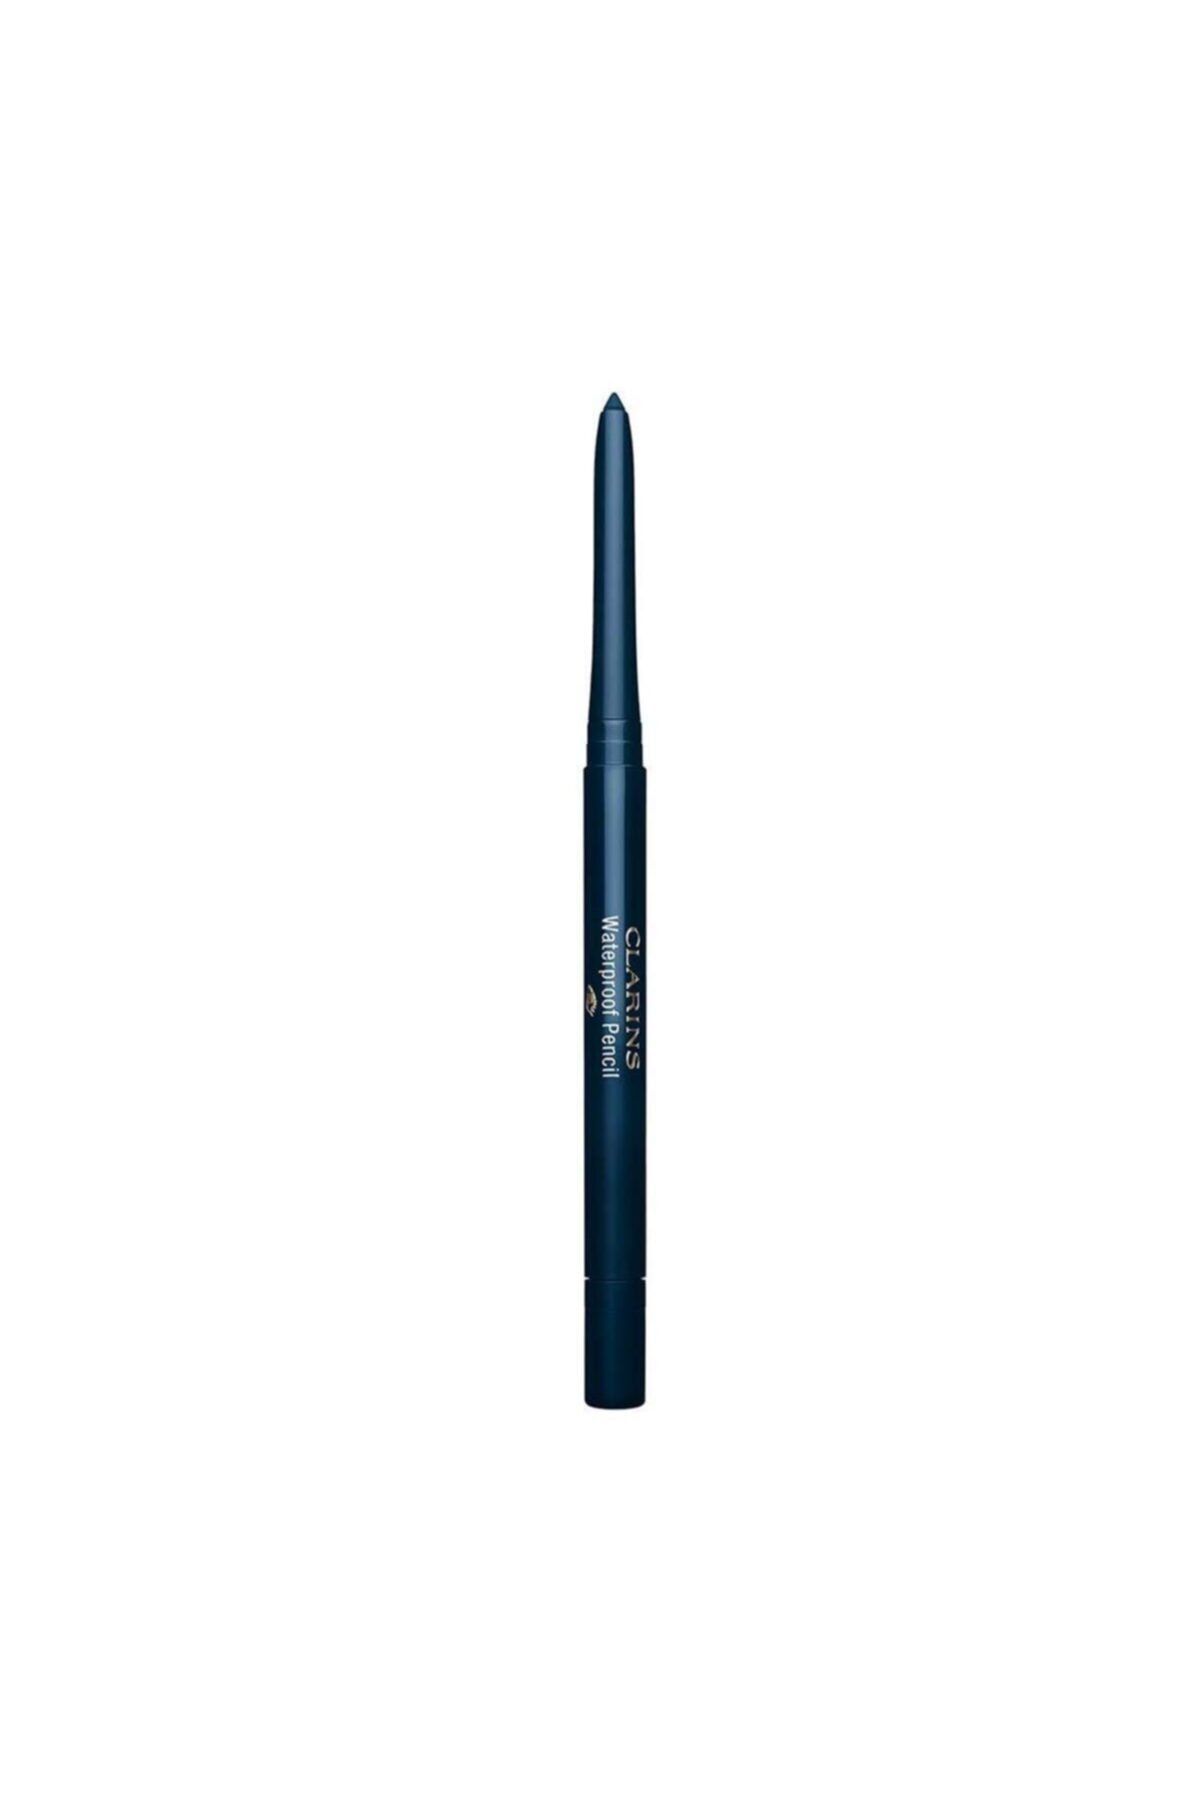 Clarins Waterproof  03 Bule Orchid Eye Liner Long Lasting Pencil